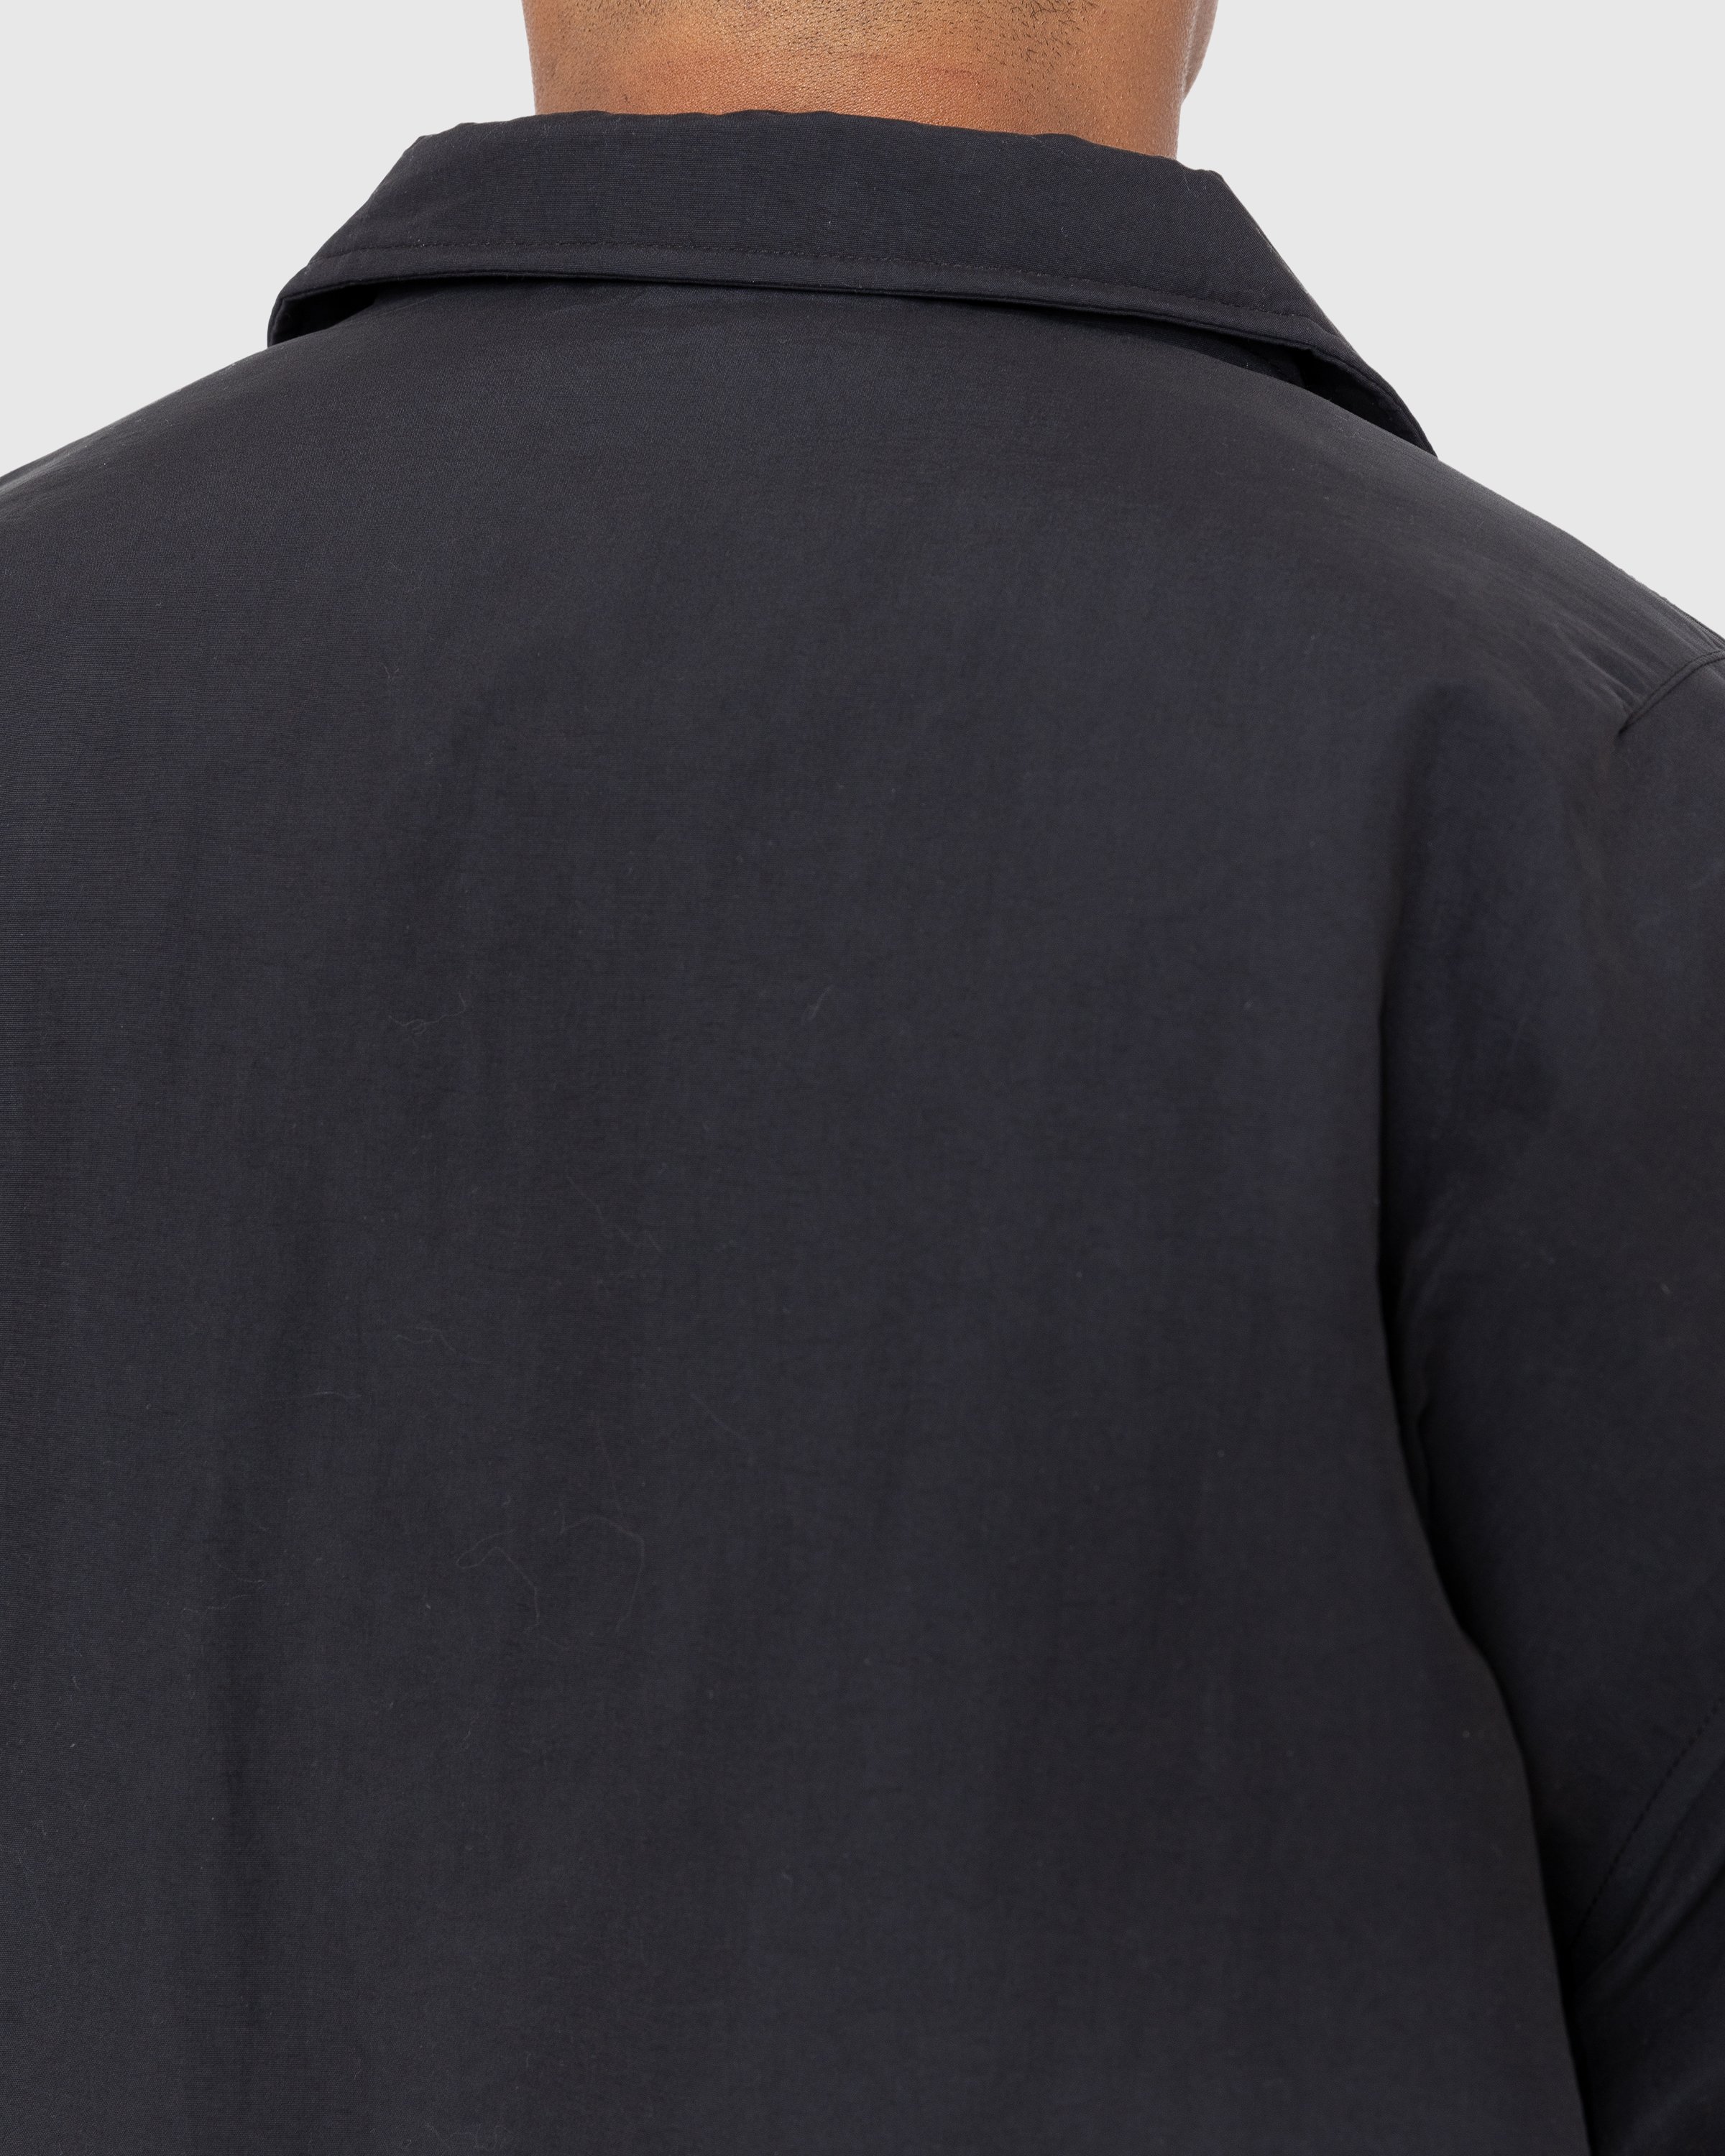 Highsnobiety - Insulated Coach Jacket Black - Clothing - Black - Image 5